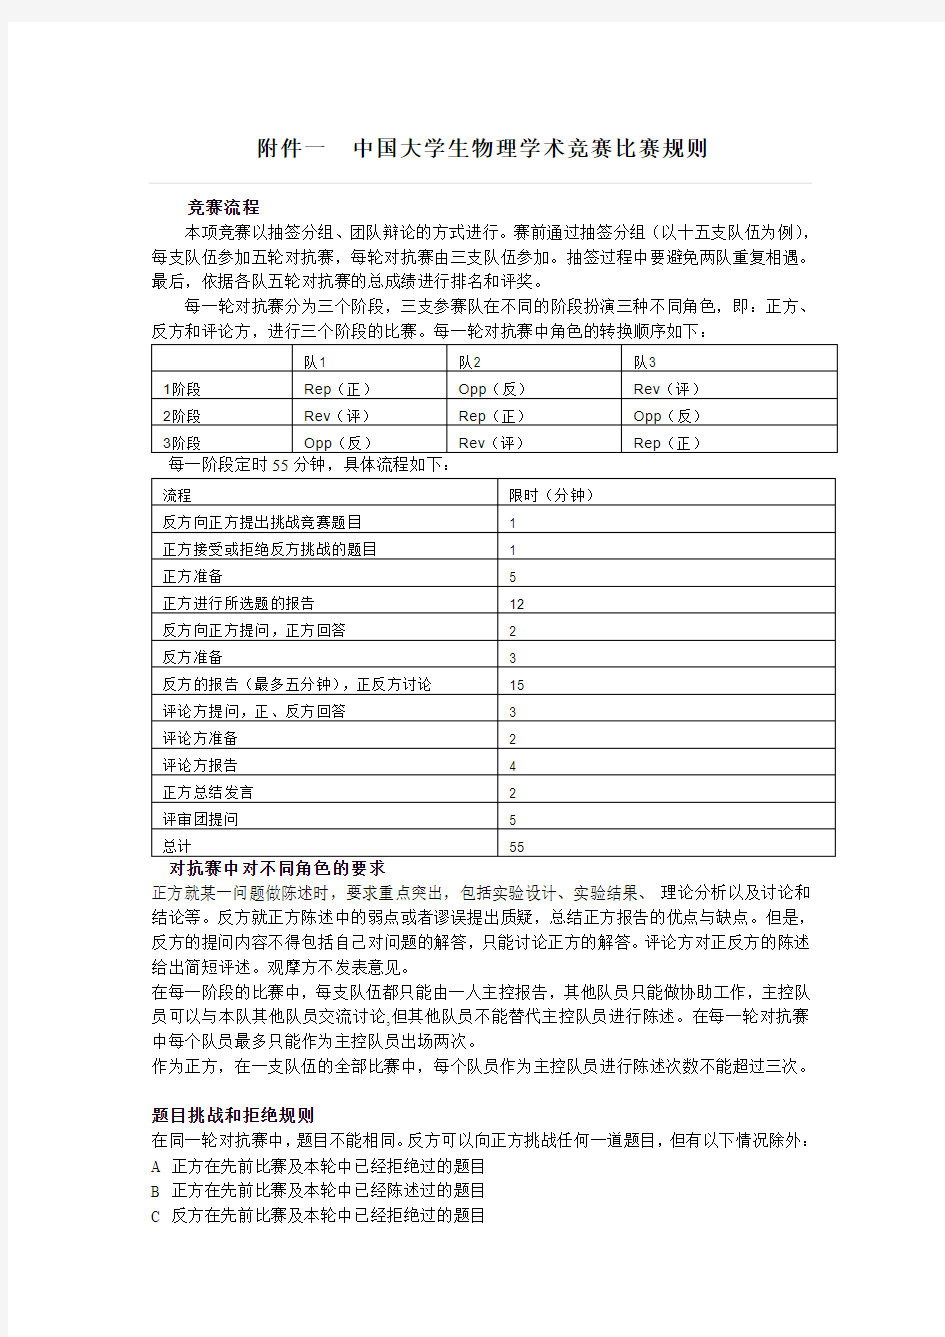 中国大学生物理学术竞赛比赛规则